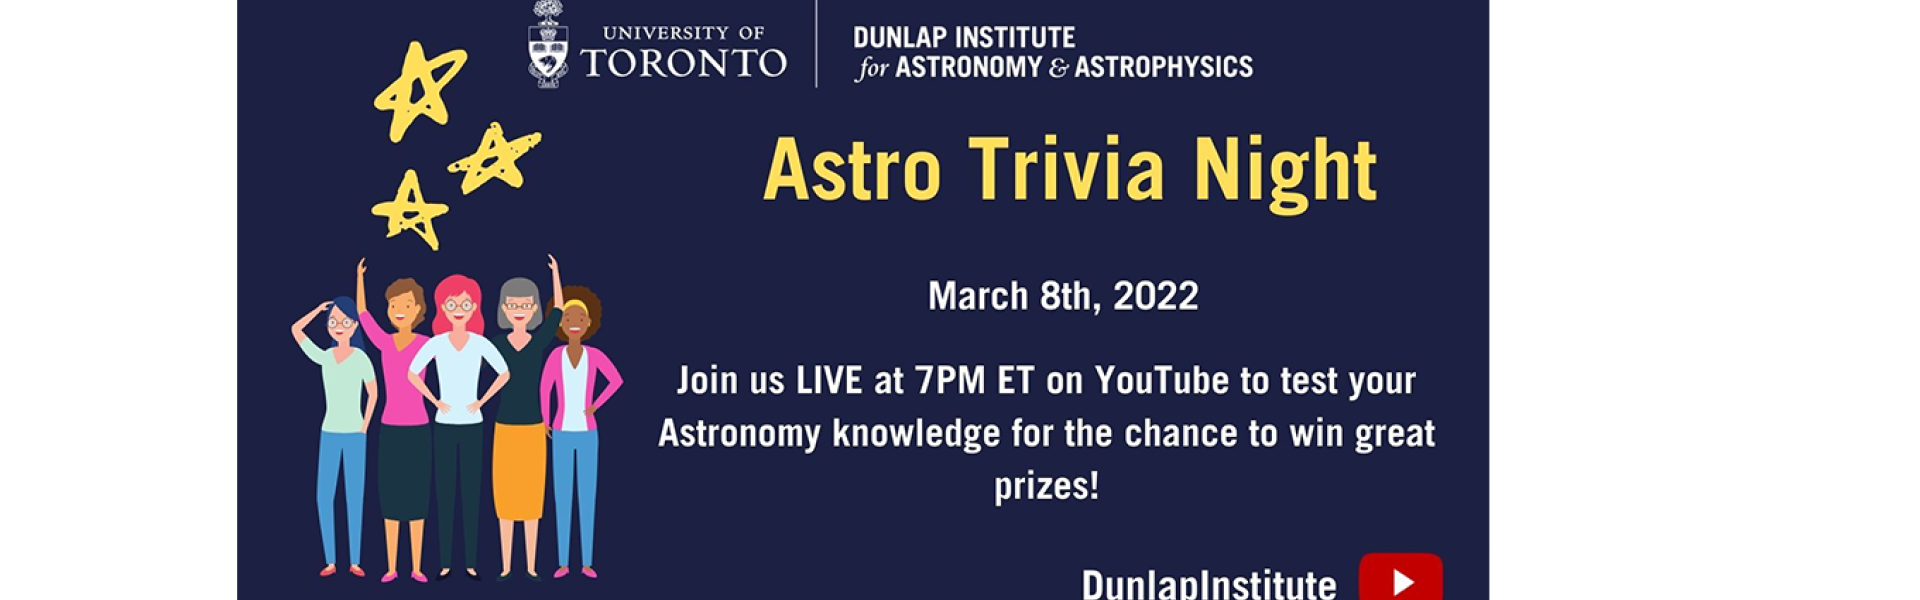 Astro Trivia Night - March 8th, 2022